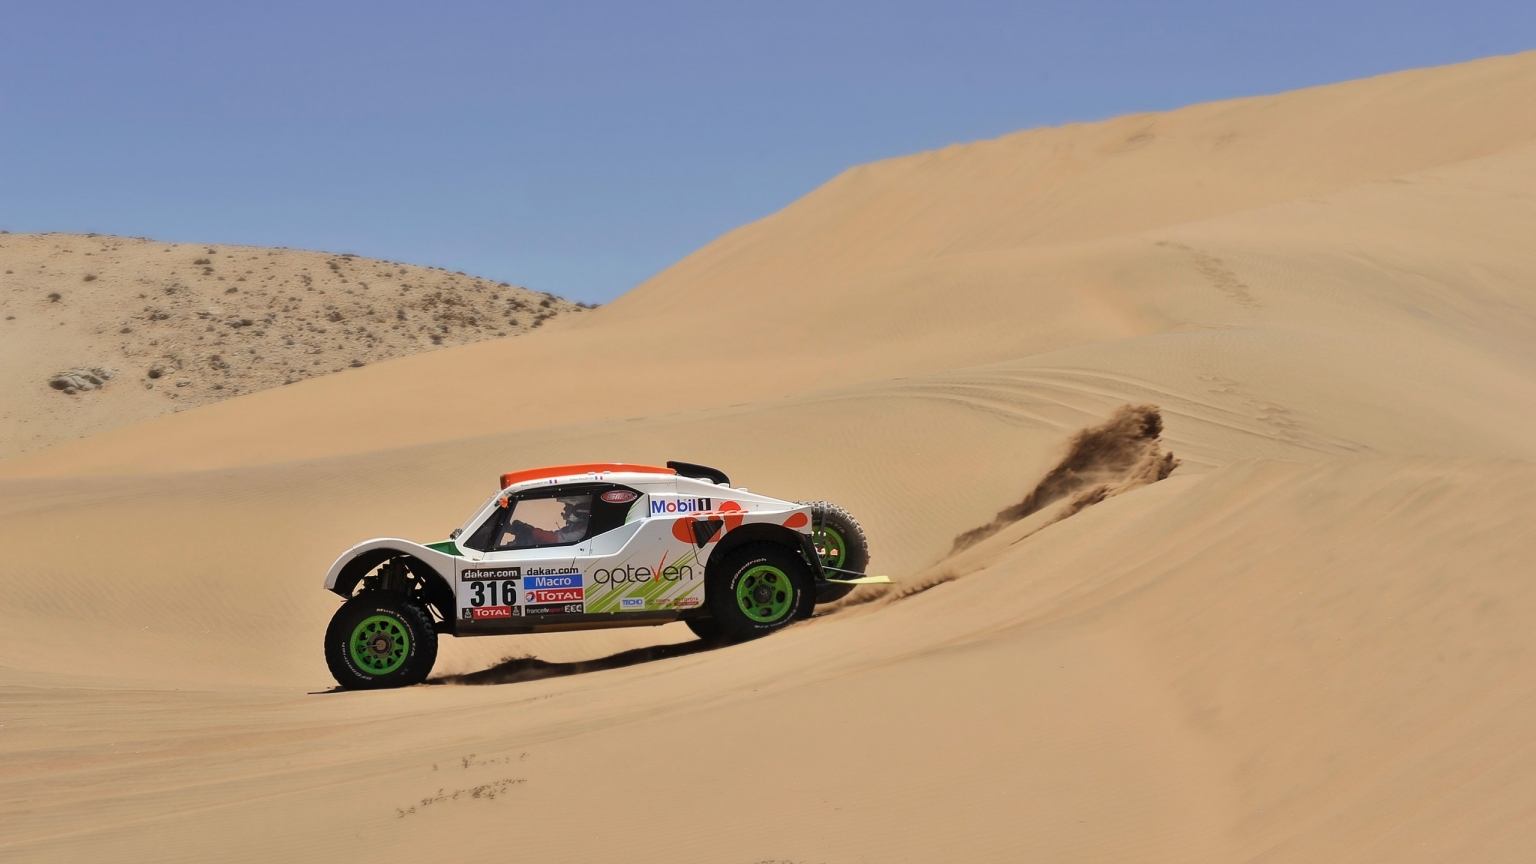 Rally Desert Race for 1536 x 864 HDTV resolution